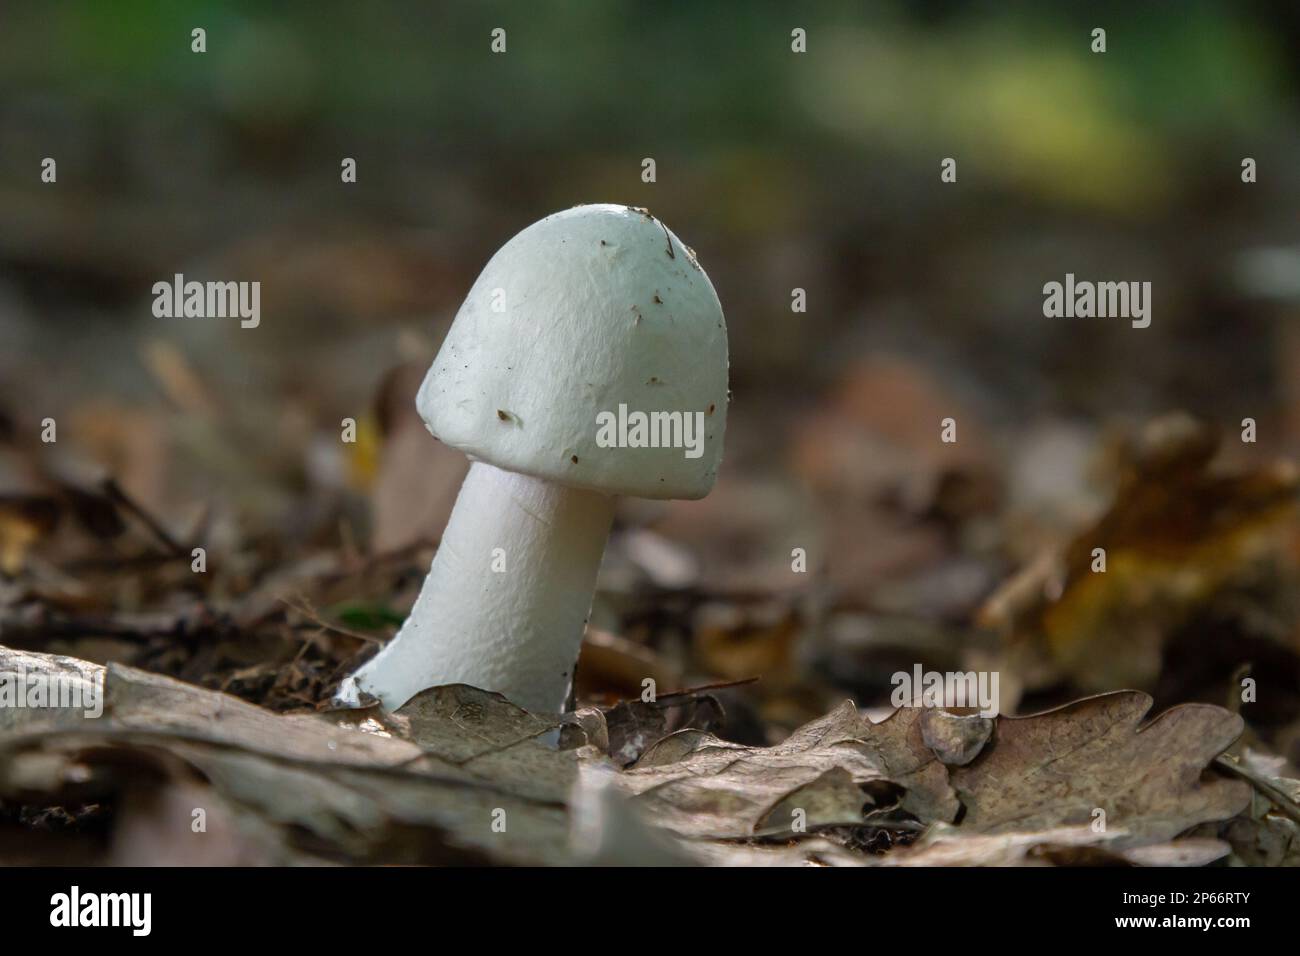 Weißer, tödlicher, giftiger Pilz Amanita virosa, auch bekannt als Zerstörungsengel. Junge eiförmige Fruchtkörper mit konischen Kappen und Schleier um den Stiel. M Stockfoto